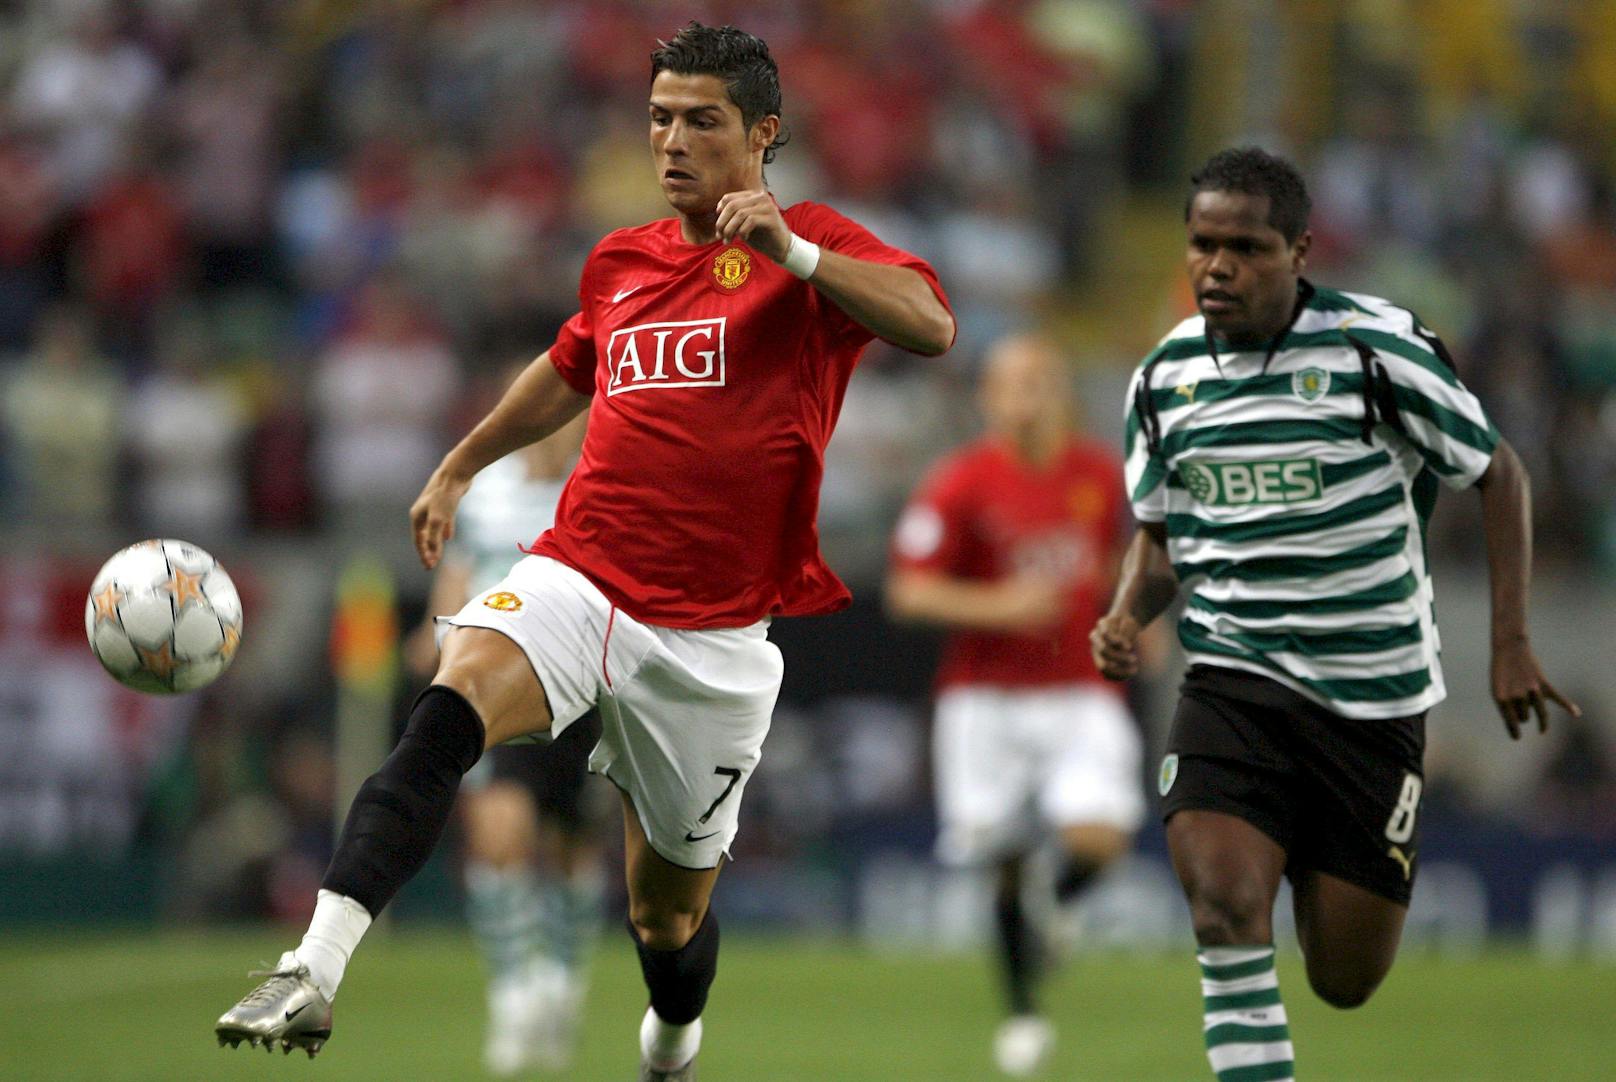 2003 bezahlte Manchester United 19 Millionen Euro für den Portugiesen, bei den Red Devils wurde er zum Star.